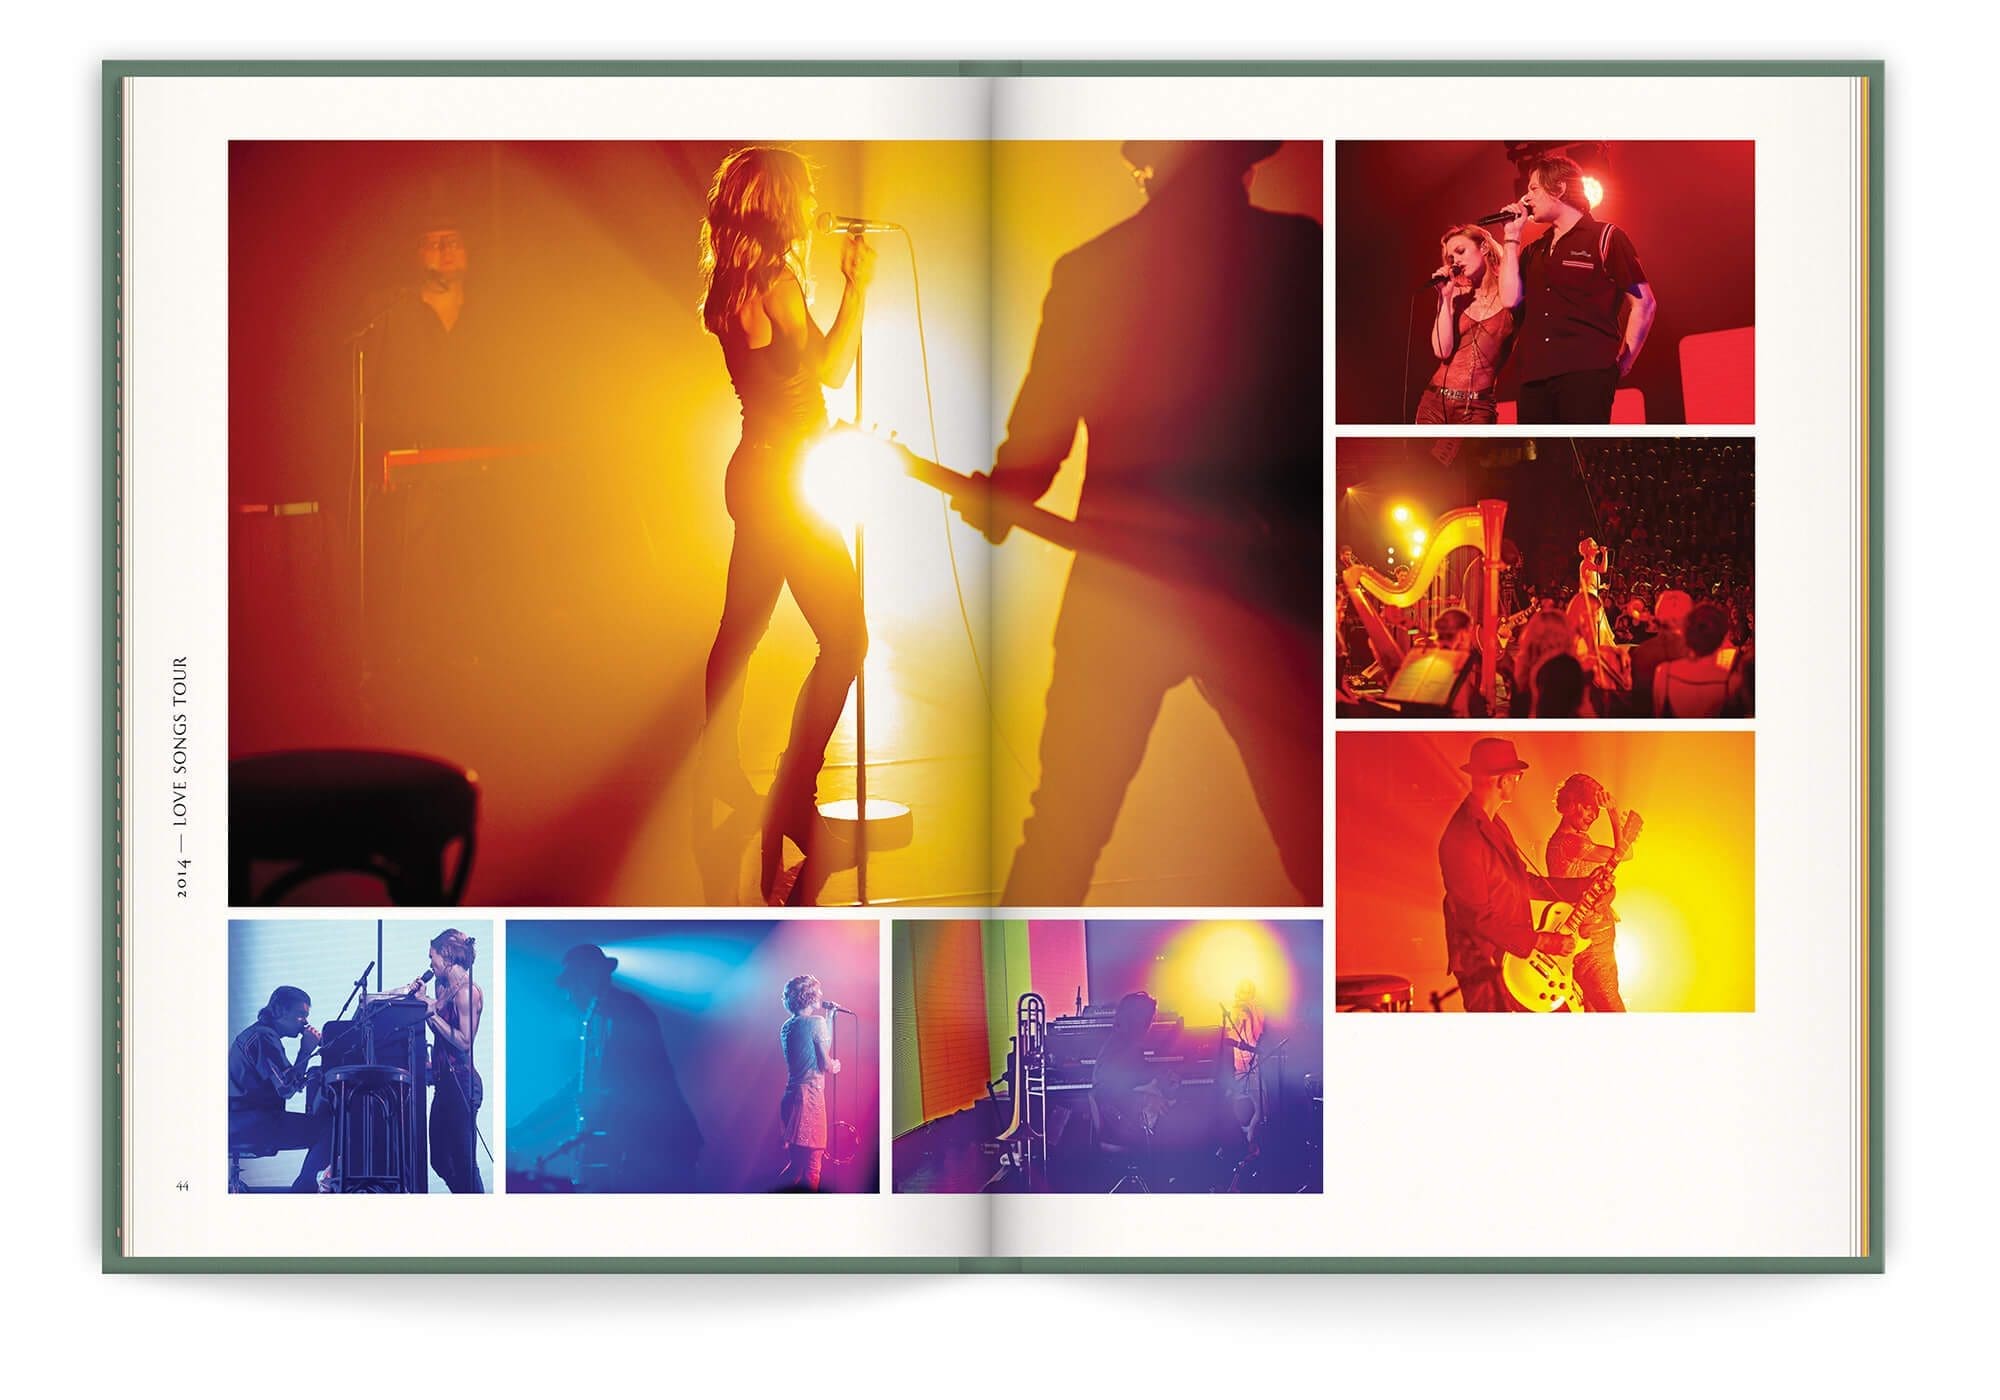 Double page du livre disque de Vanessa Paradis, photo de concert pour le tournée Love Song en 2014, design et mise en page IchetKar